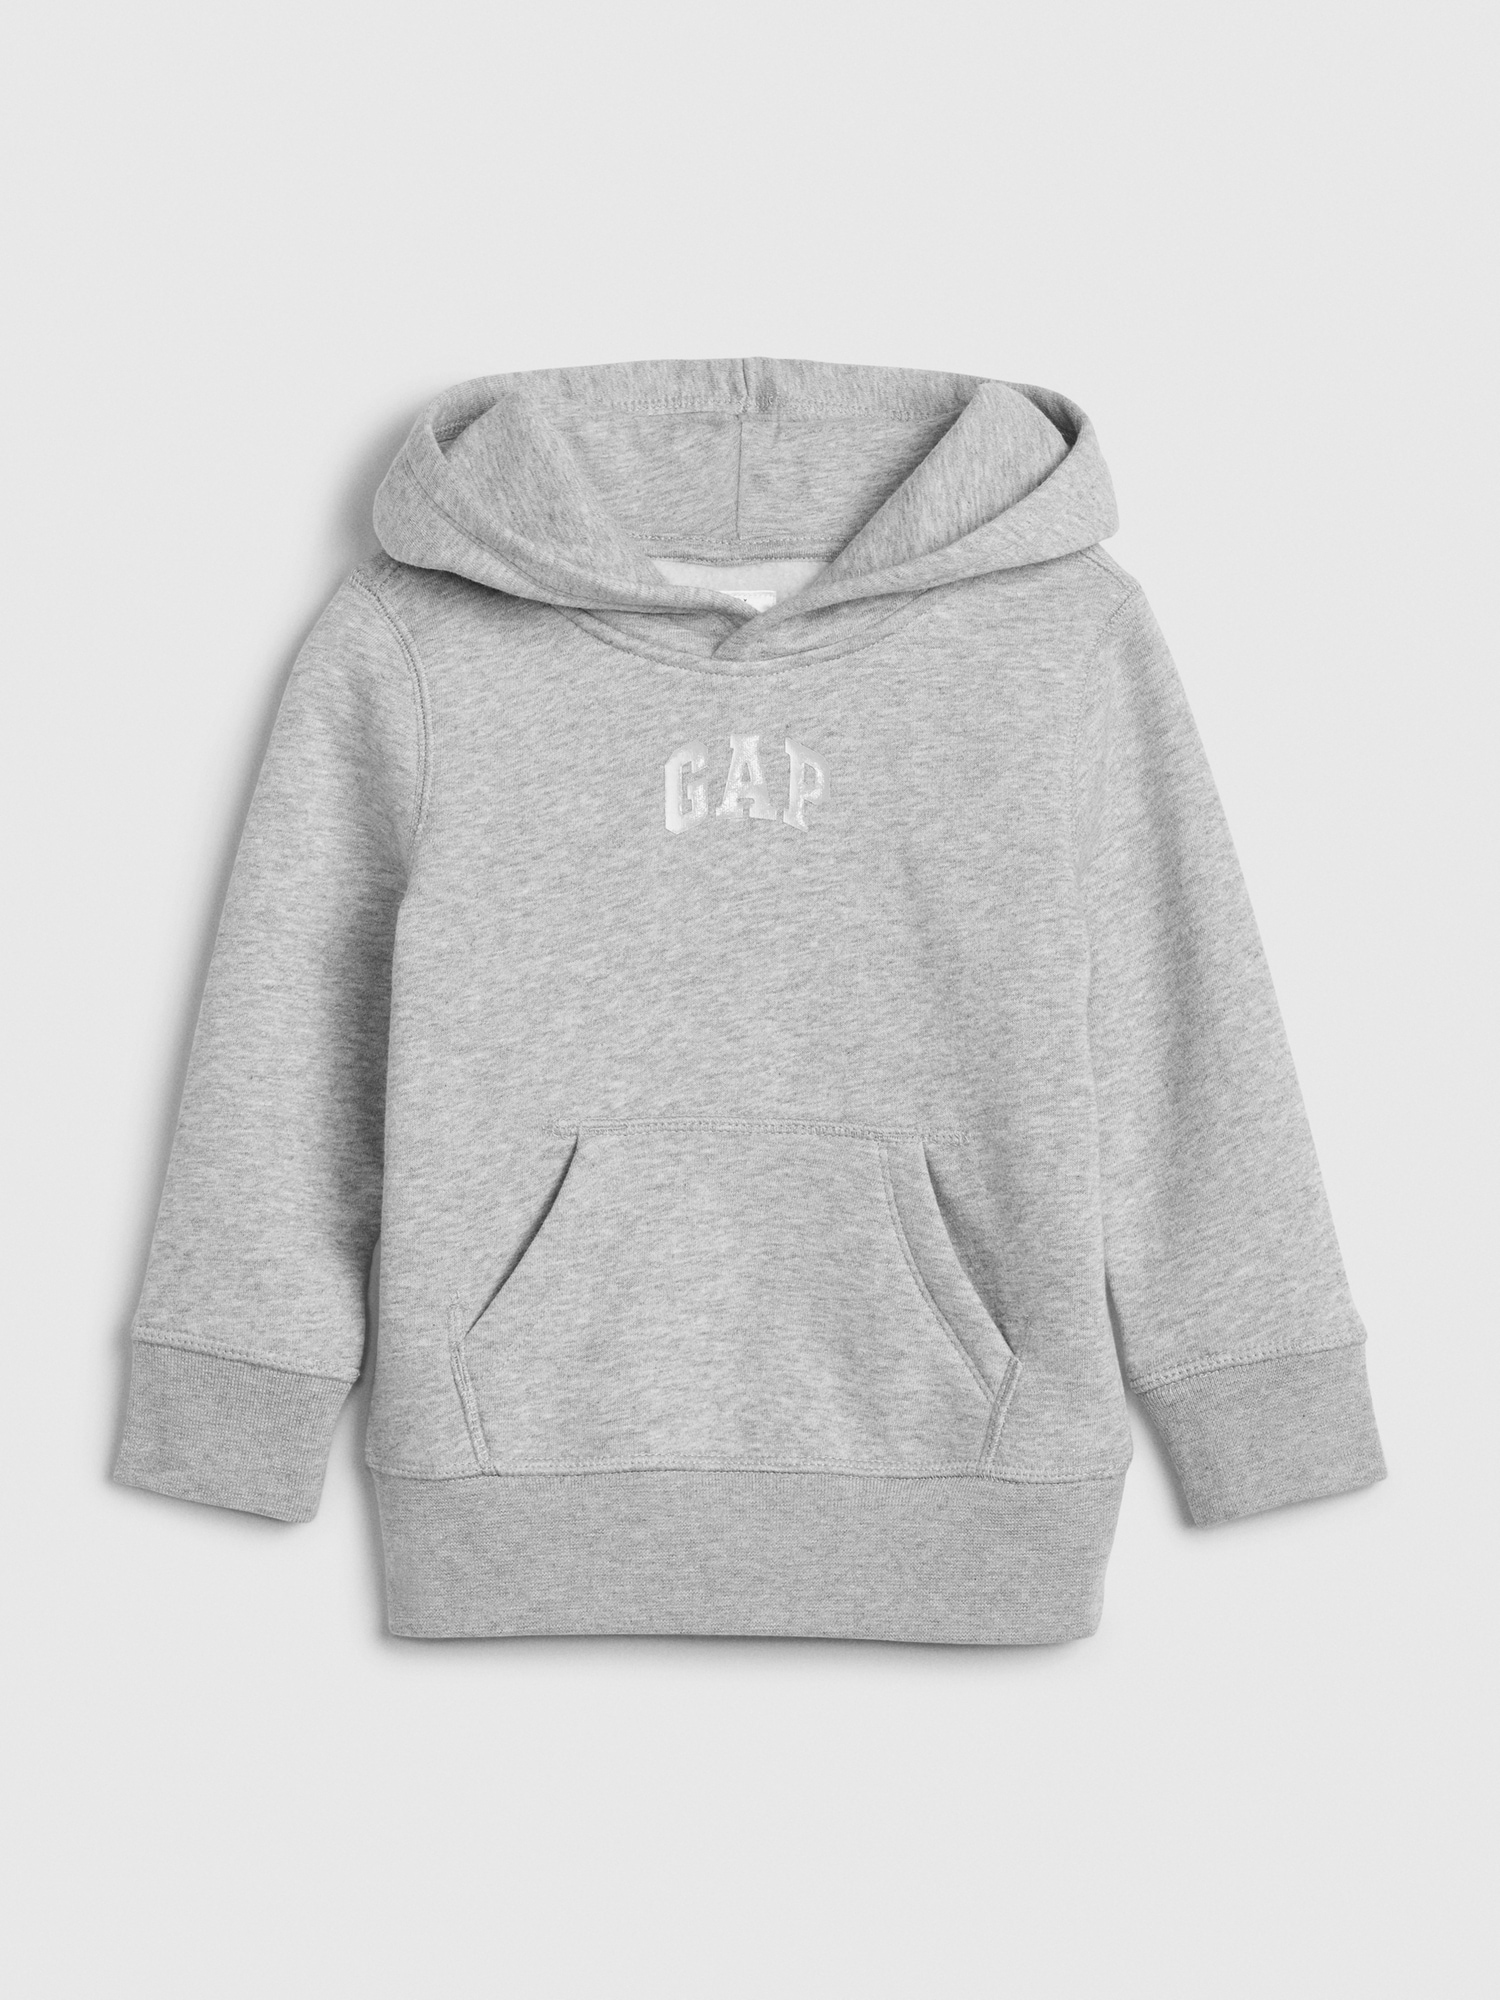 Toddler Gap Logo Hoodie Sweatshirt | Gap